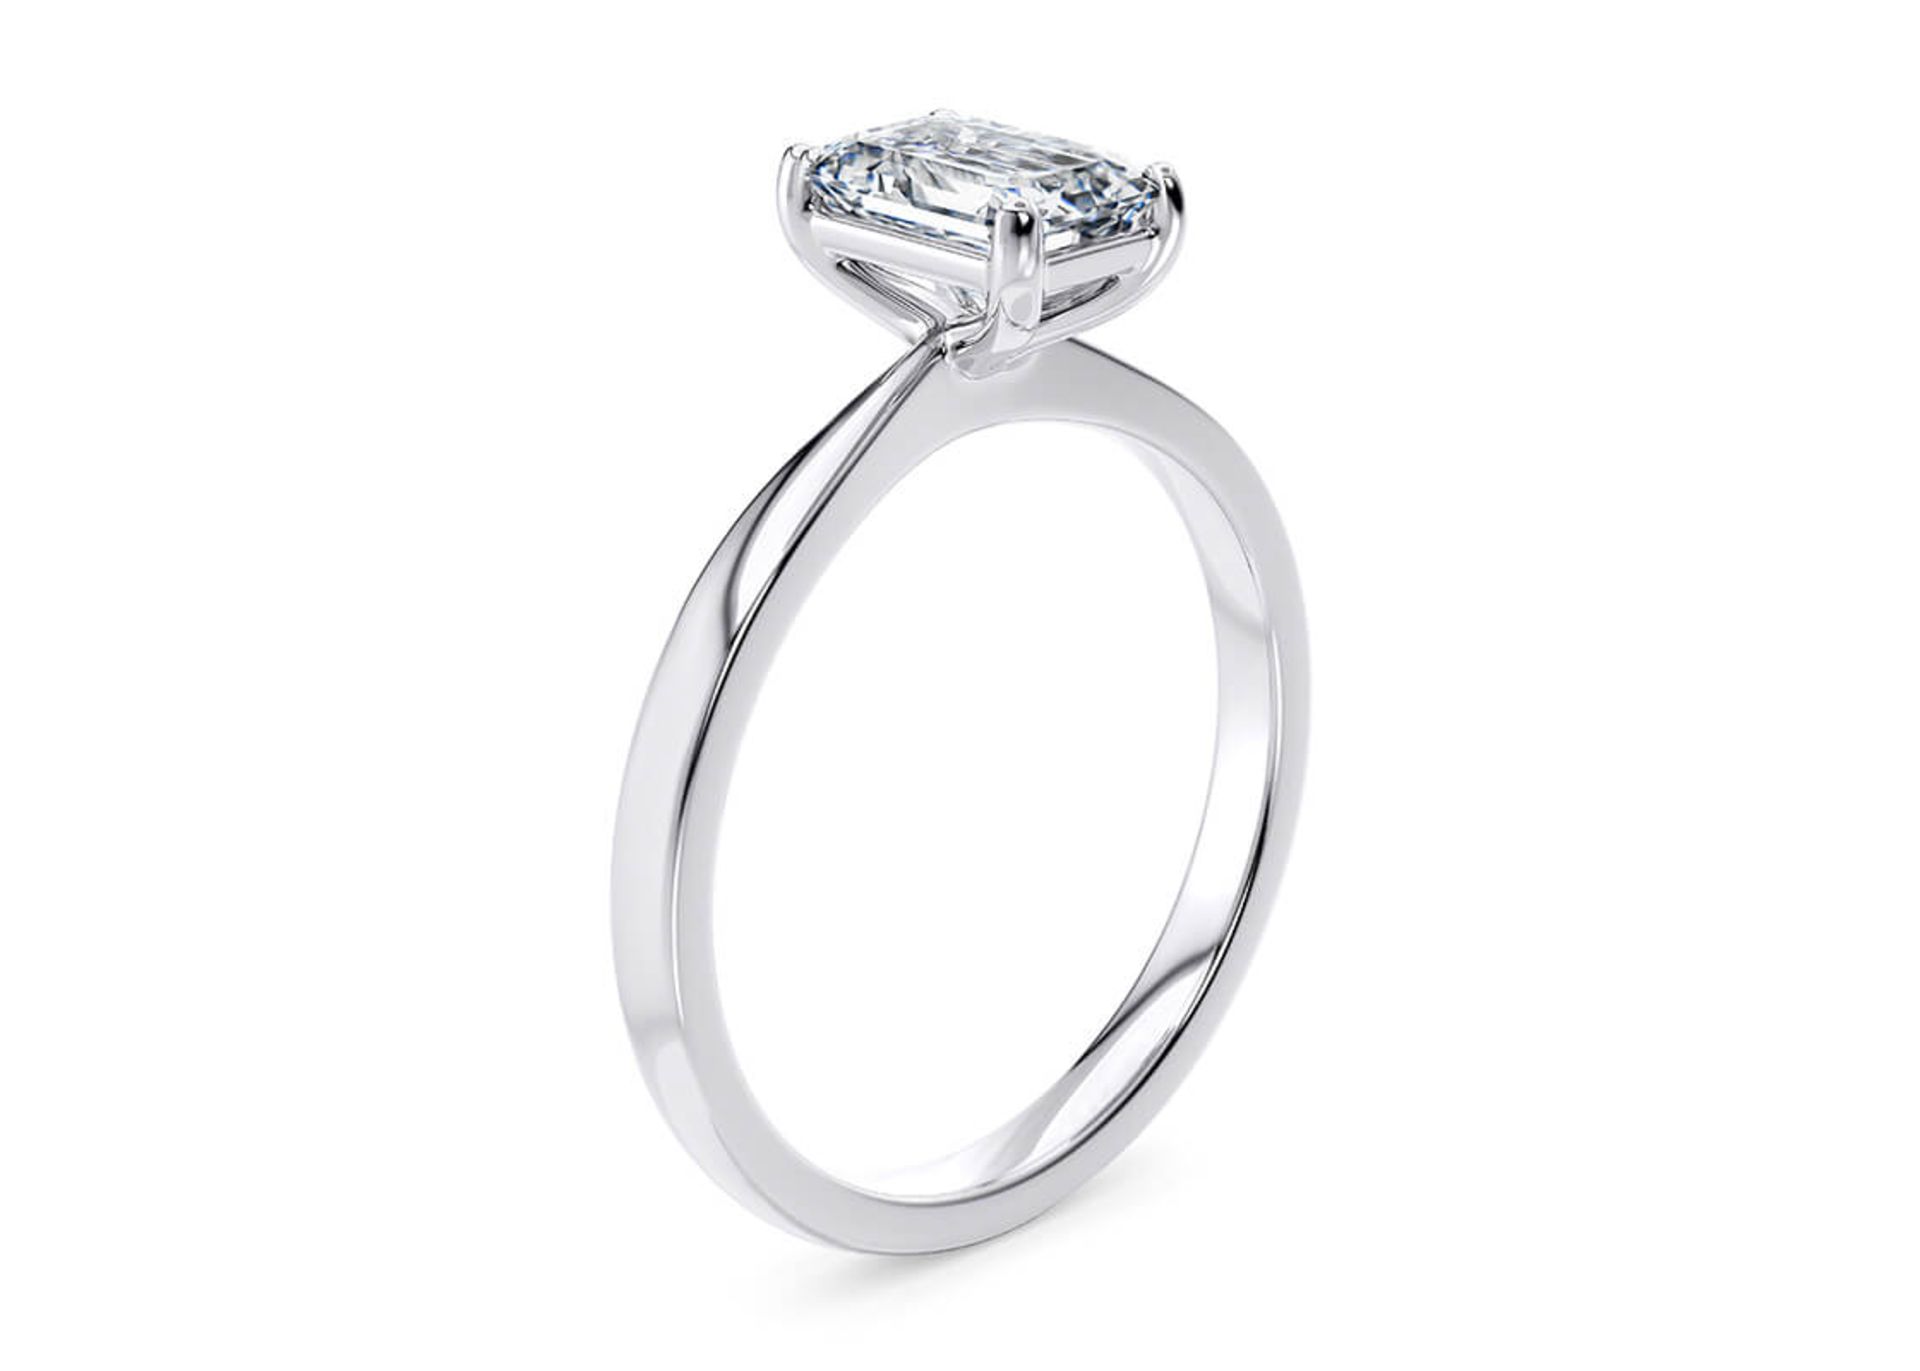 ** ON SALE ** Emerald Cut Diamond Platinum Ring 2.00 Carat D Colour VS2 Clarity EX EX - IGI - Image 2 of 3